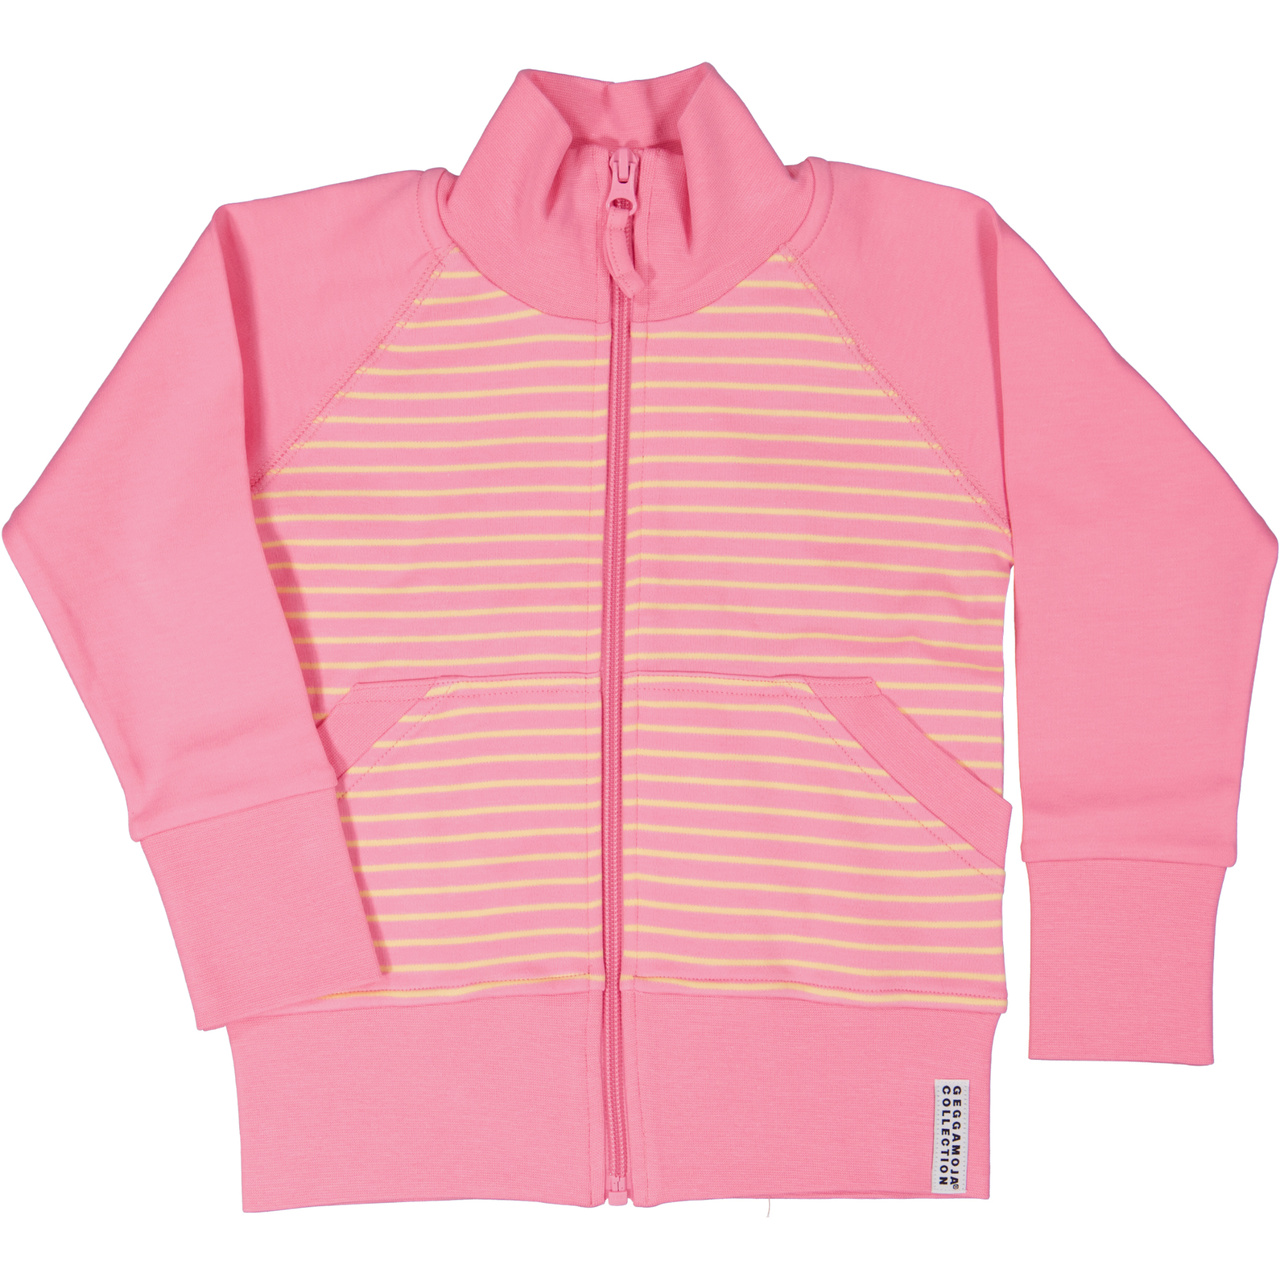 Zip sweater Pink/yellow  146/152